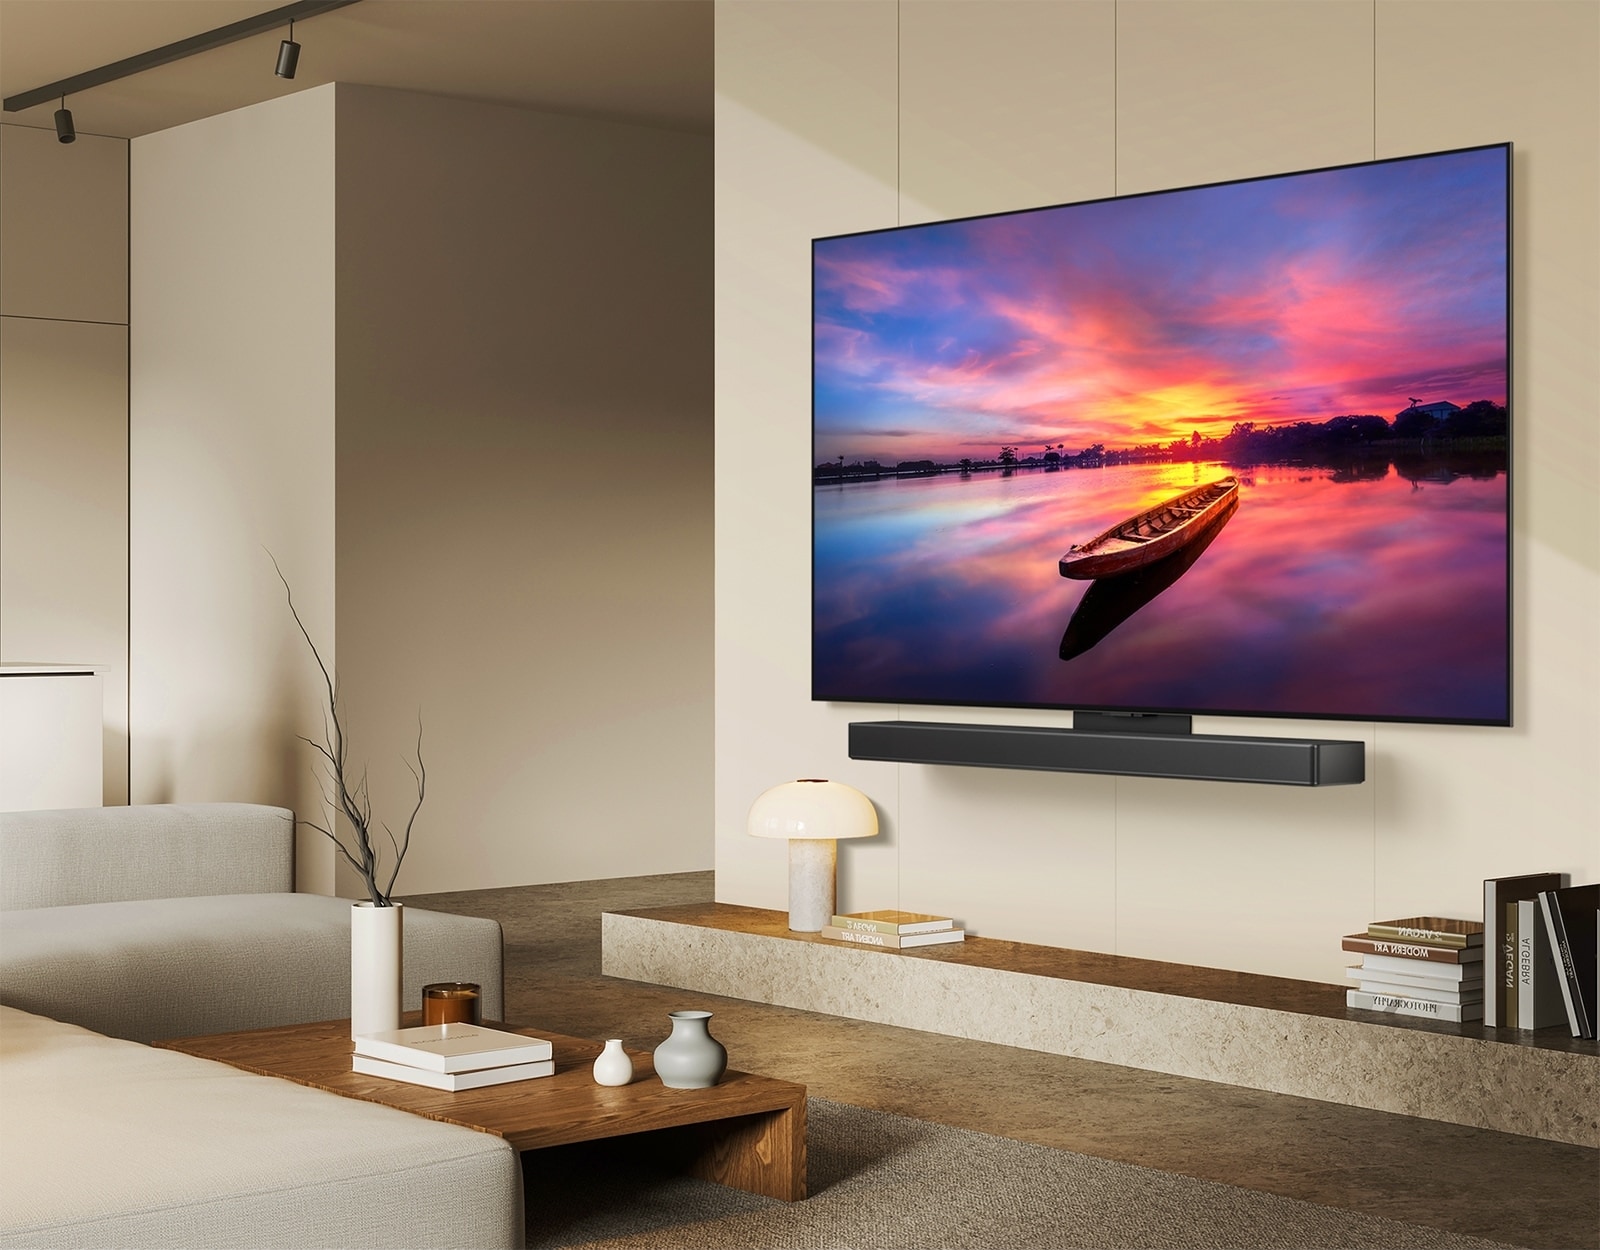 تلفزيون LG OLED TV،‏ OLED C4 يظهر بزاوية 45 درجة إلى اليسار ويعرض غروب الشمس الجميل مع قارب على البحيرة، حيث يتم توصيل التلفزيون بمكبر صوت LG Soundbar عبر حامل Synergy في غرفة معيشة تتسم بالبساطة.